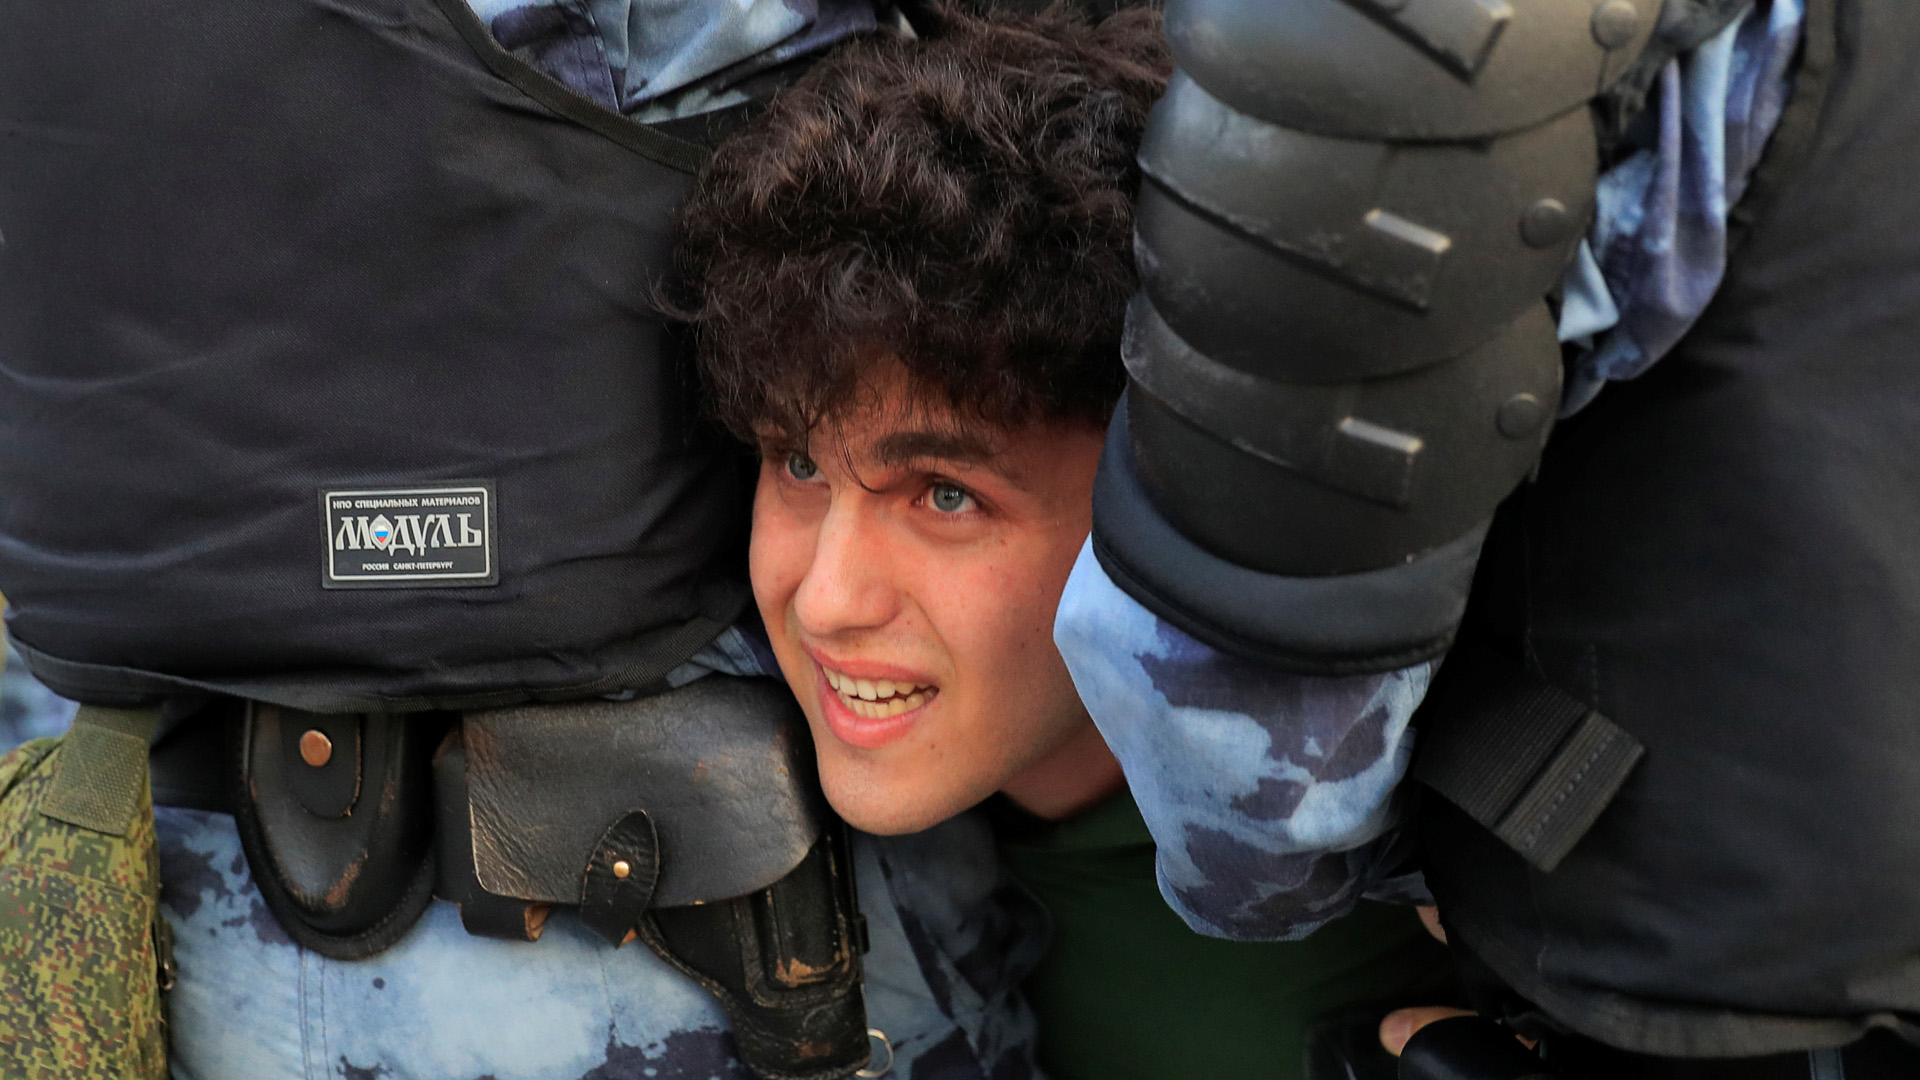 Ein Demonstrant wird von Polizisten gewaltsam festgehalten | REUTERS